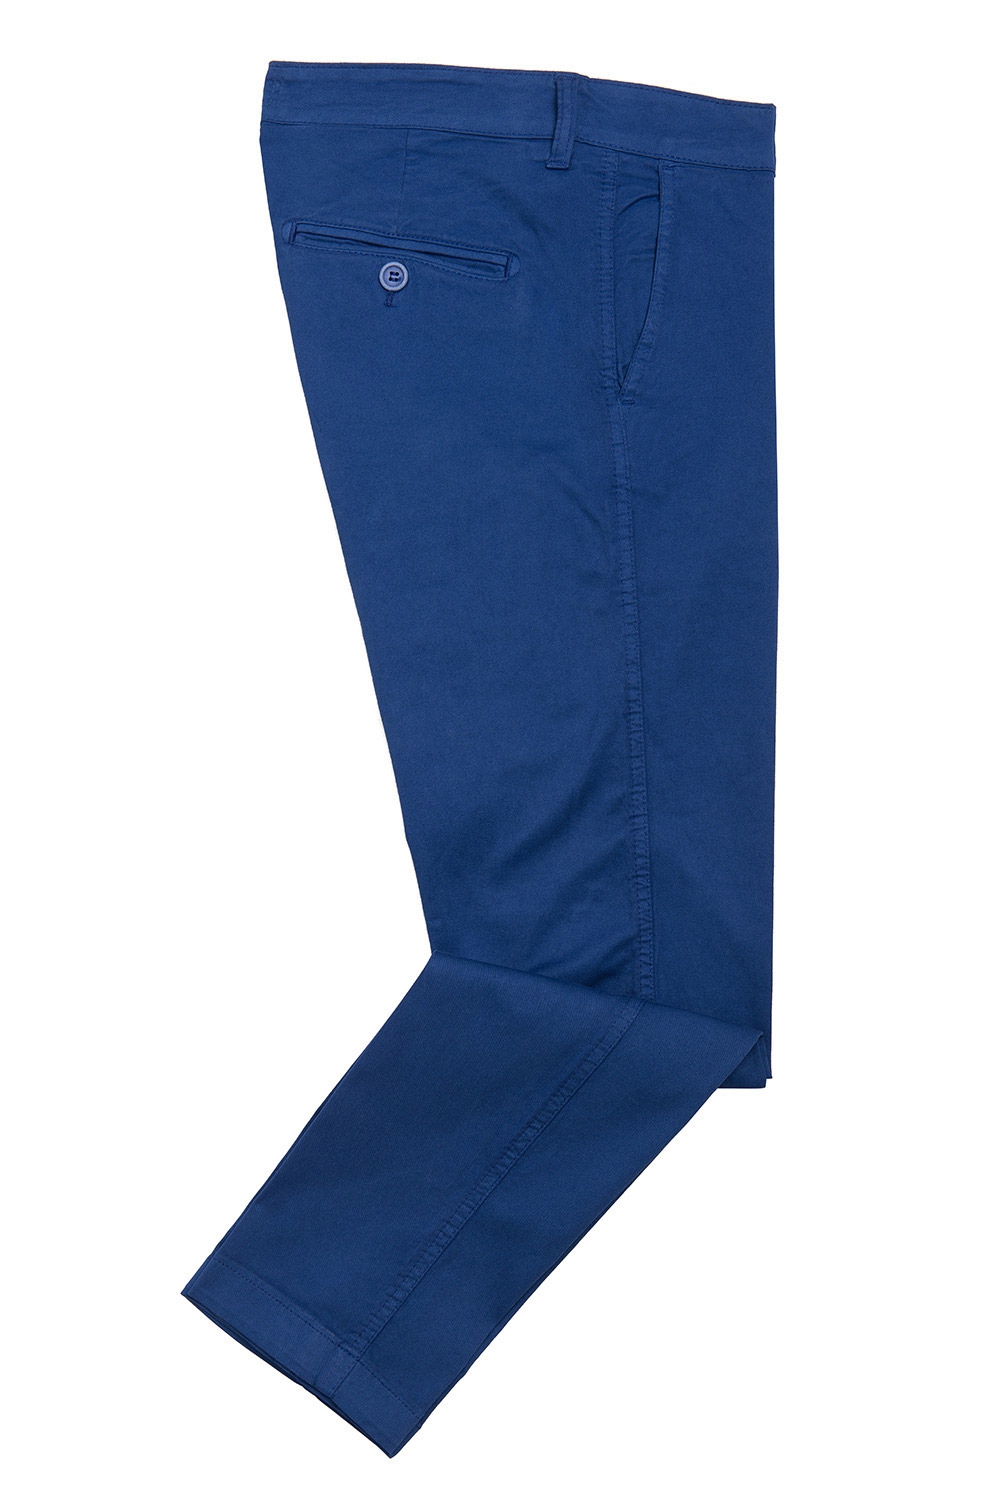 Pantaloni  albastri uni 1